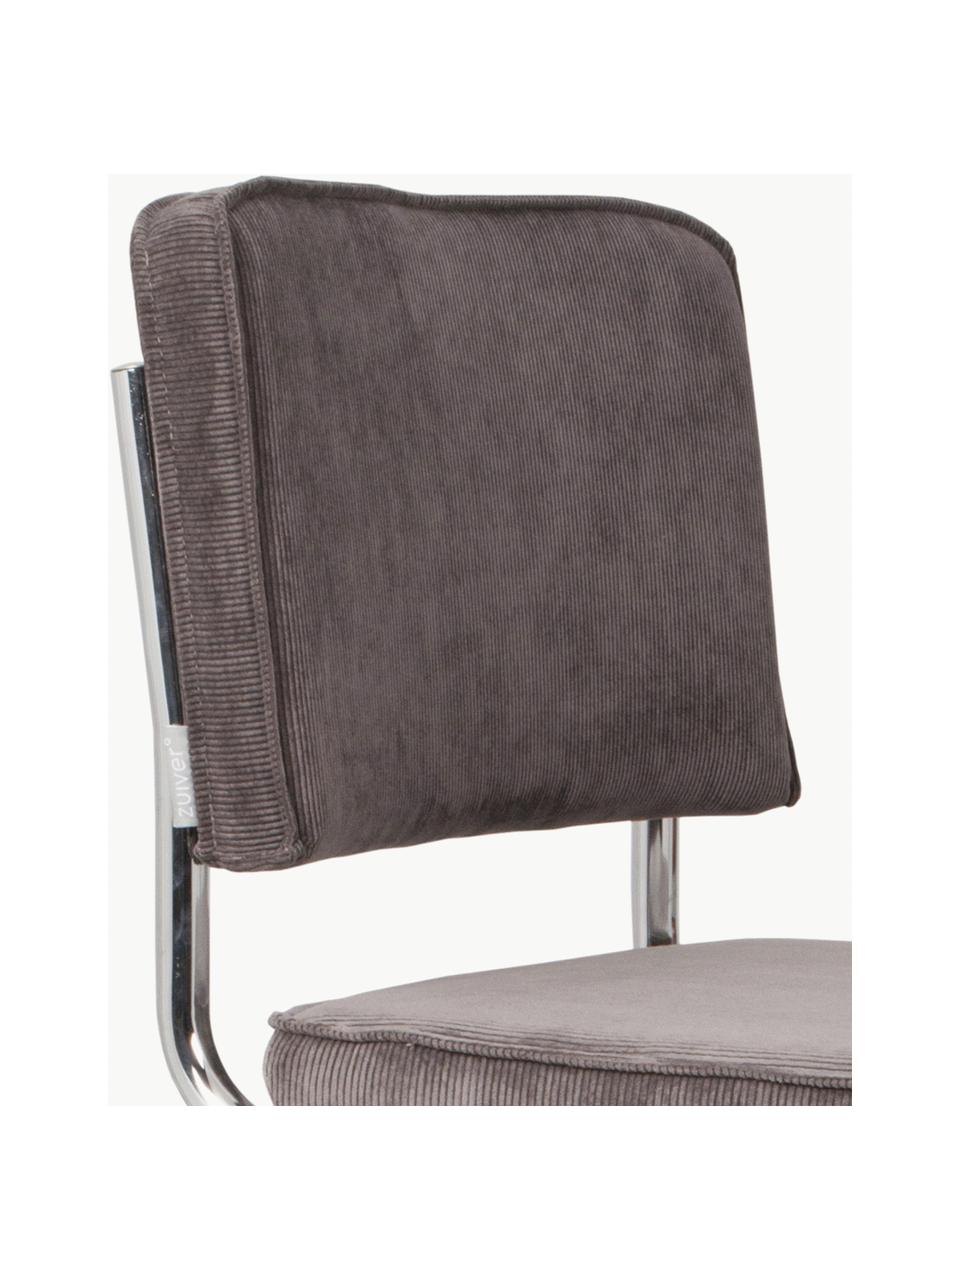 Chaise cantilever en velours côtelé Kink, Velours côtelé gris, cadre chrome, larg. 48 x prof. 48 cm